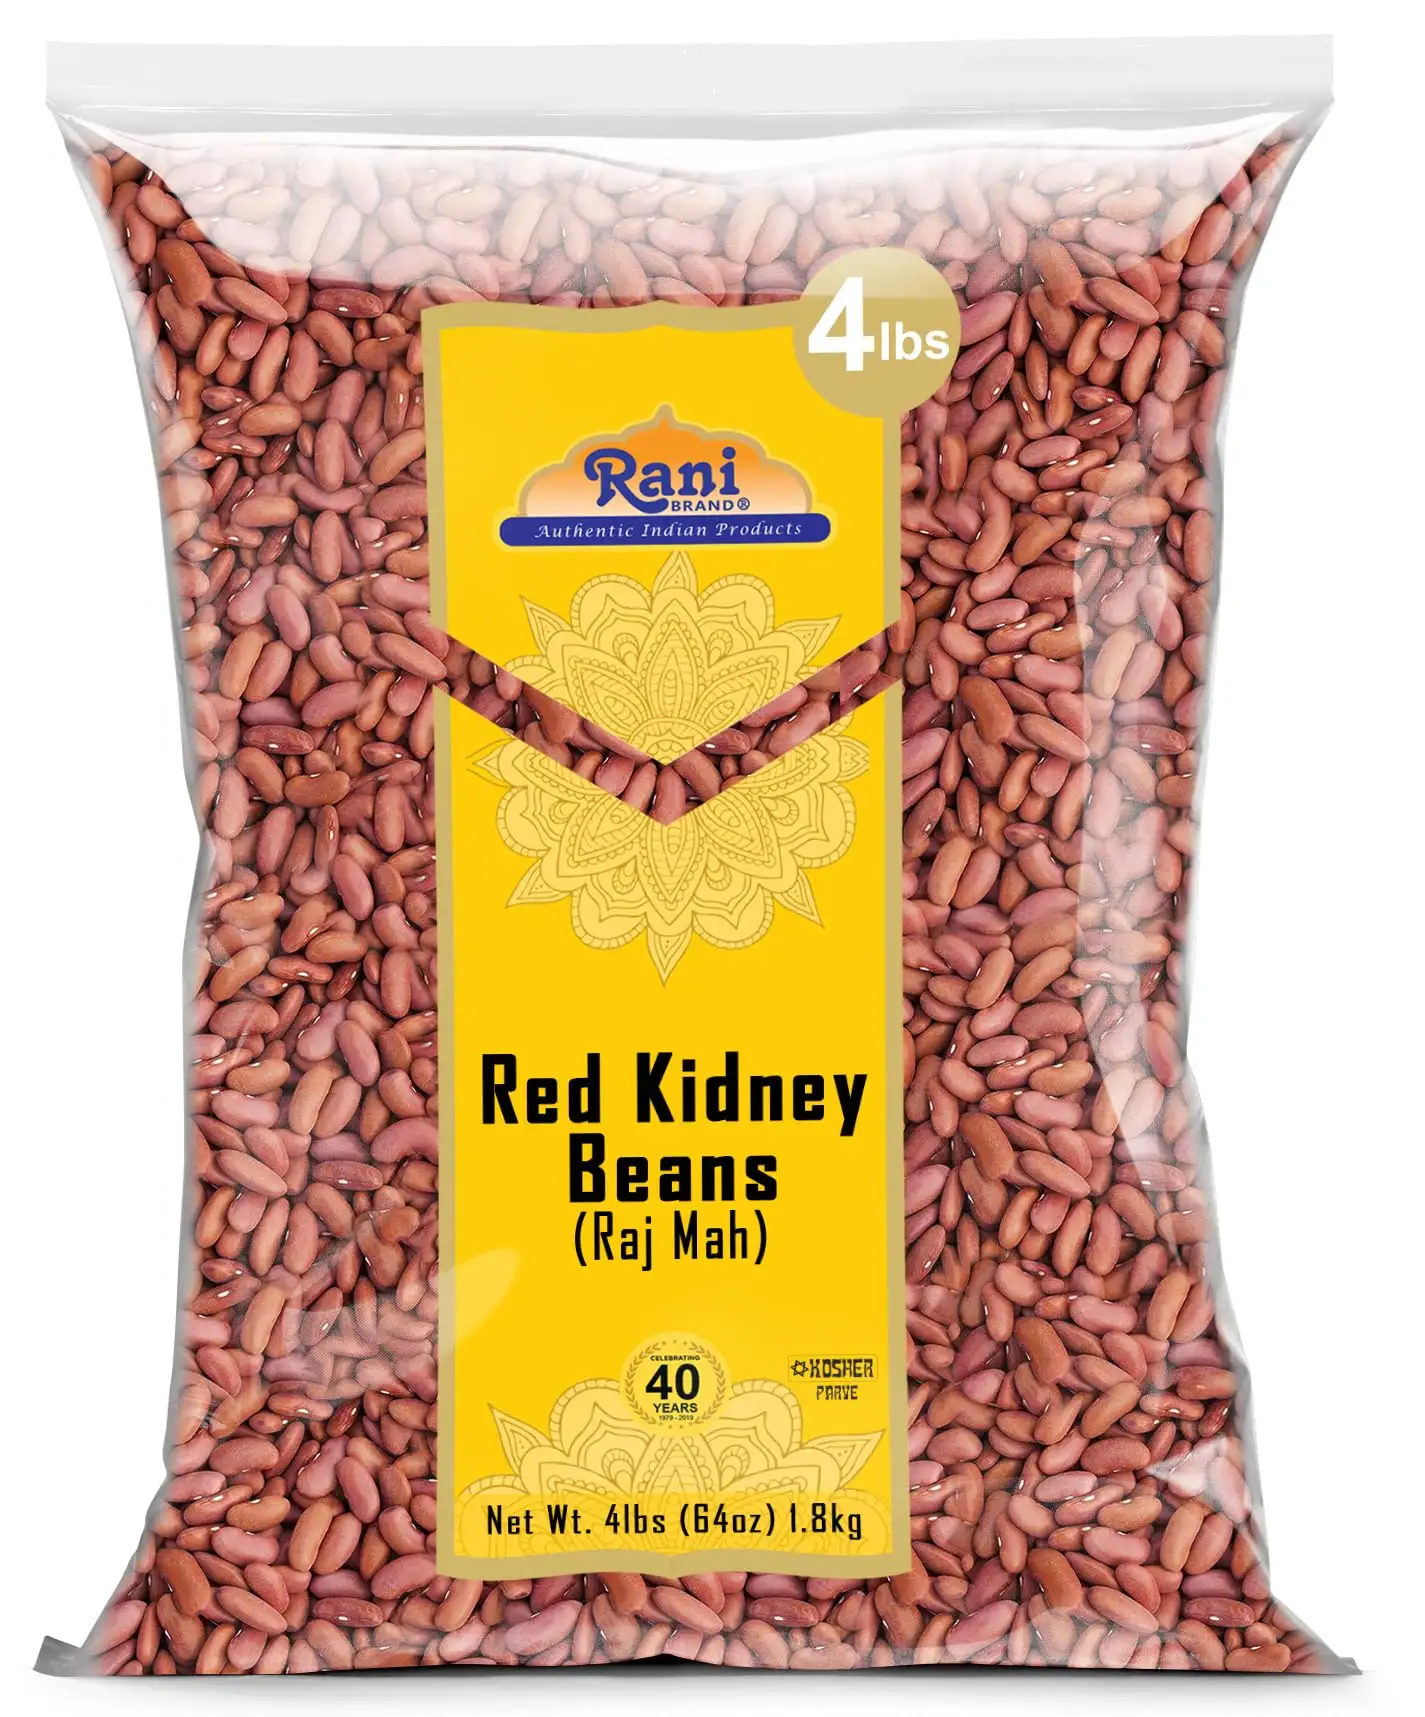 저렴한 비 GMO 붉은 신장 콩과 붉은 콩 도매 가격/흰 신장 콩/검은 신장 콩 5kg